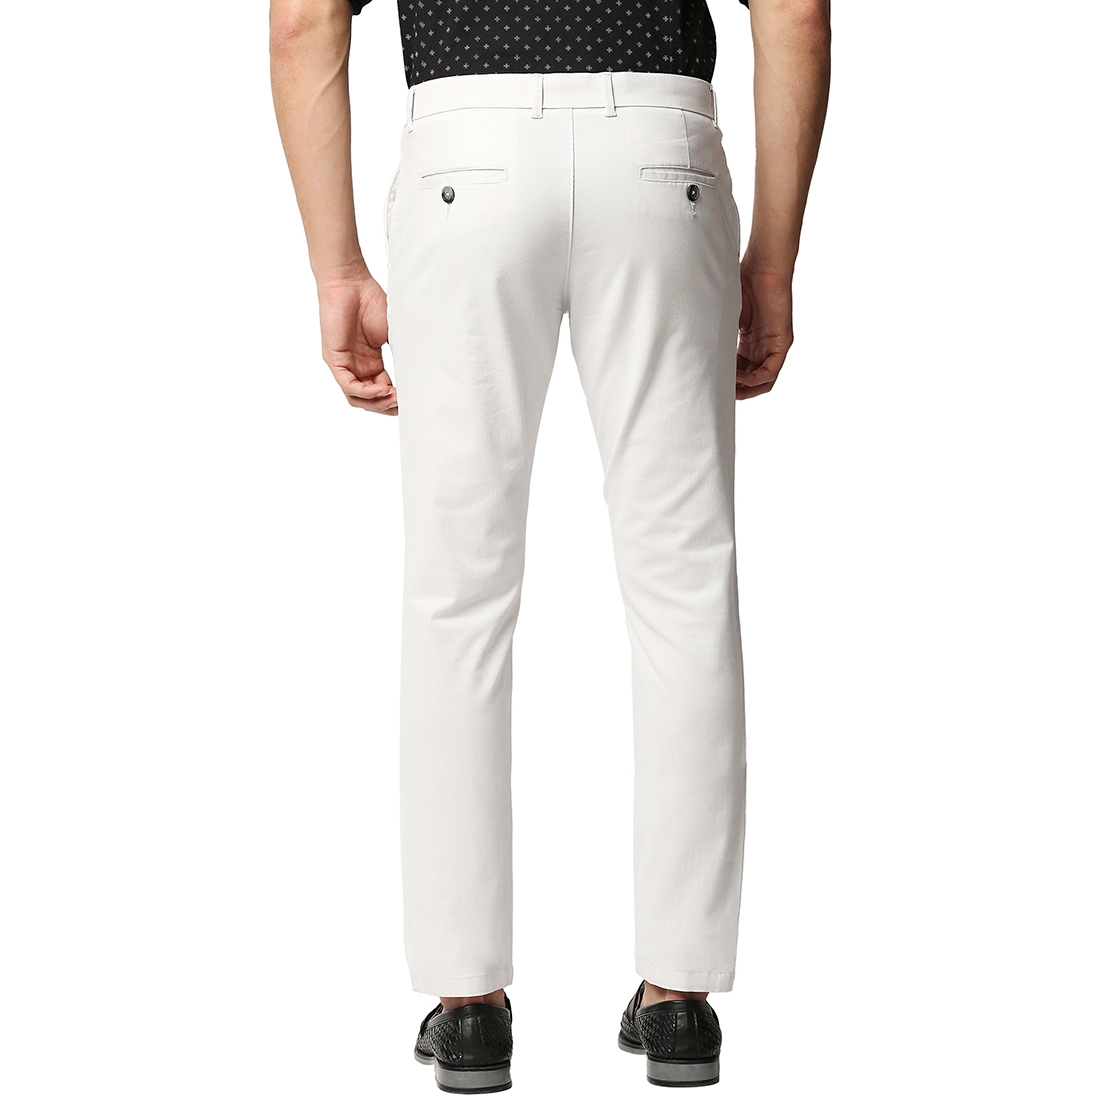 Basics | Men's White Cotton Blend Solid Trouser 1